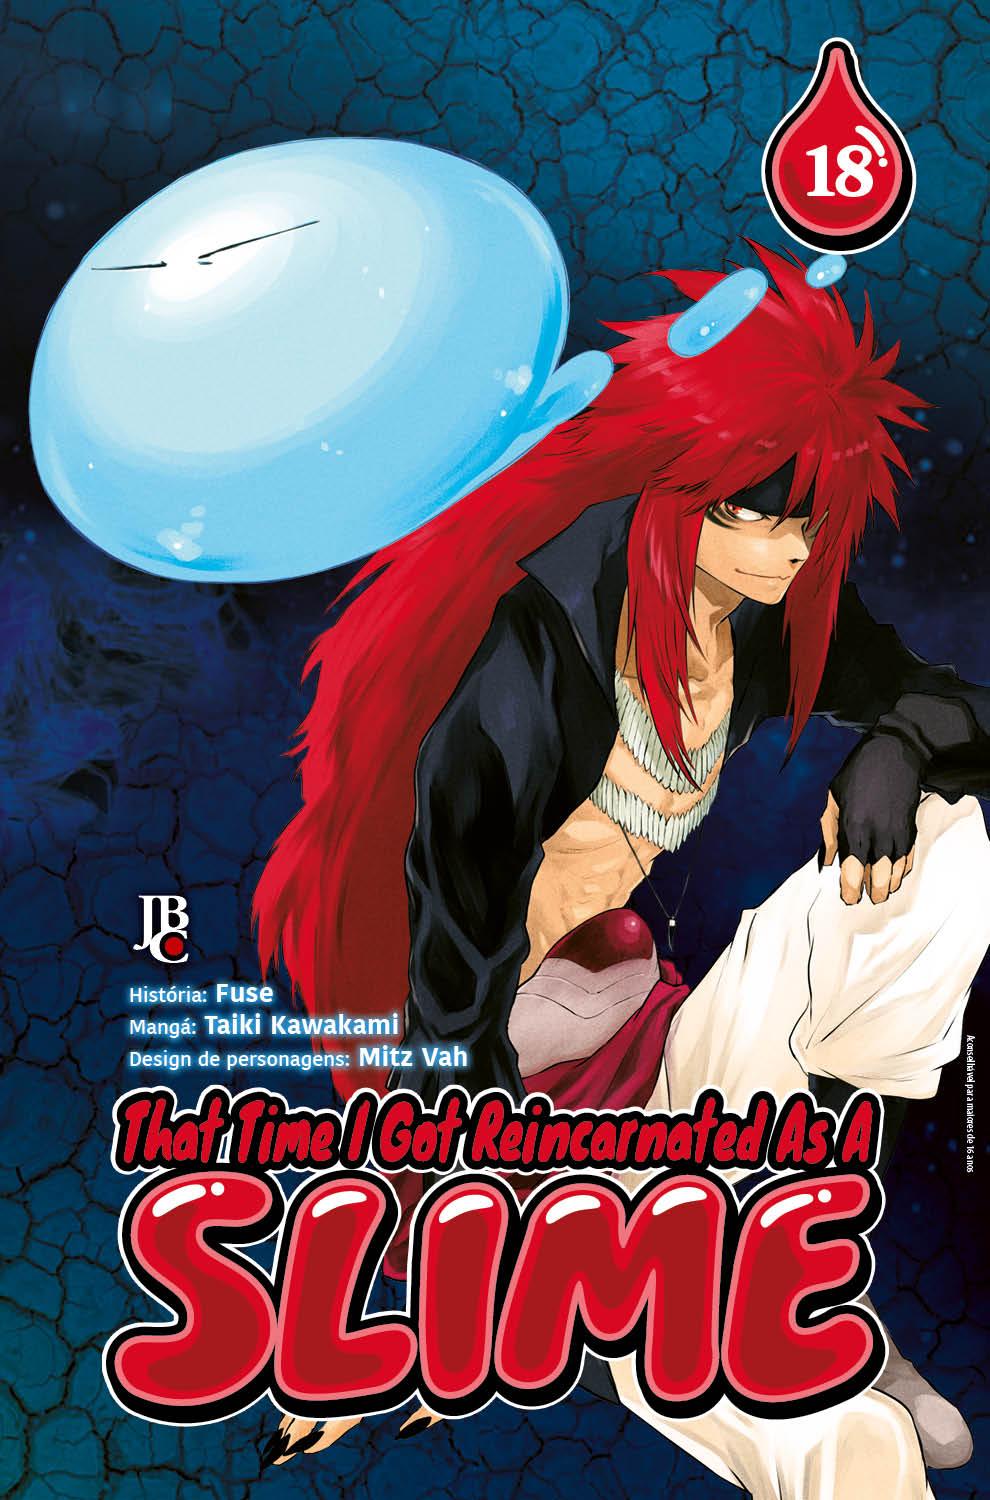 Rimuru Tempest  Personagens de anime, Anime, Arte legal